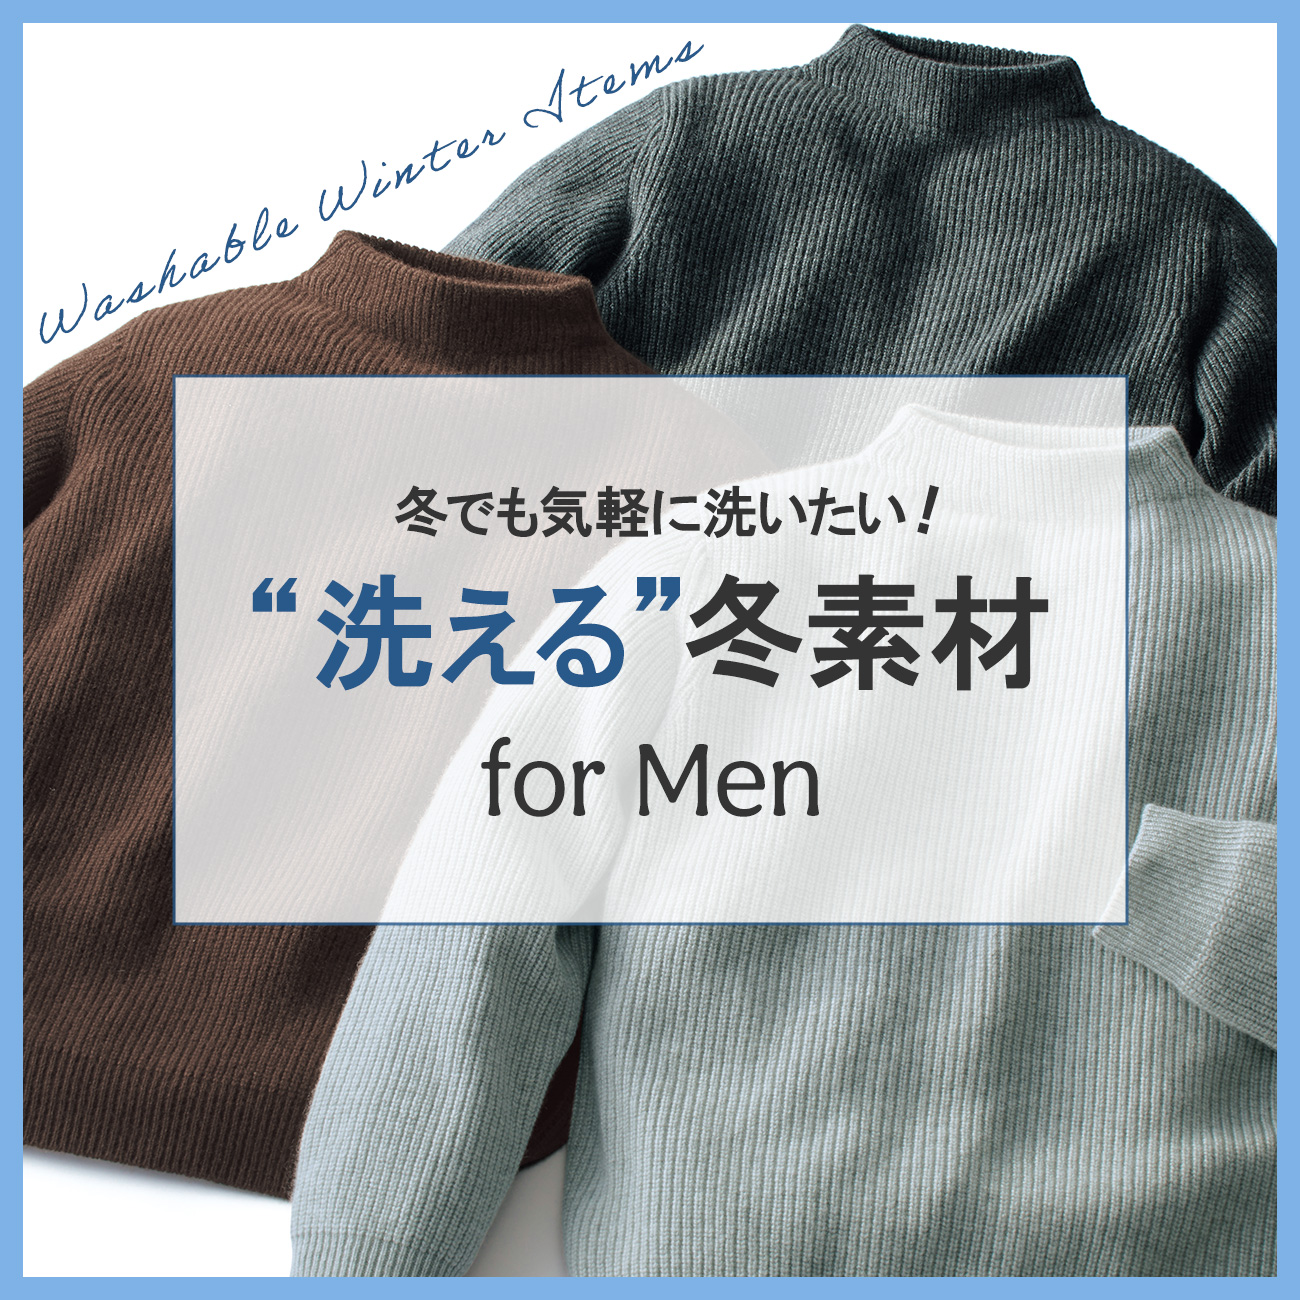 【特集】洗える冬素材 for Men 